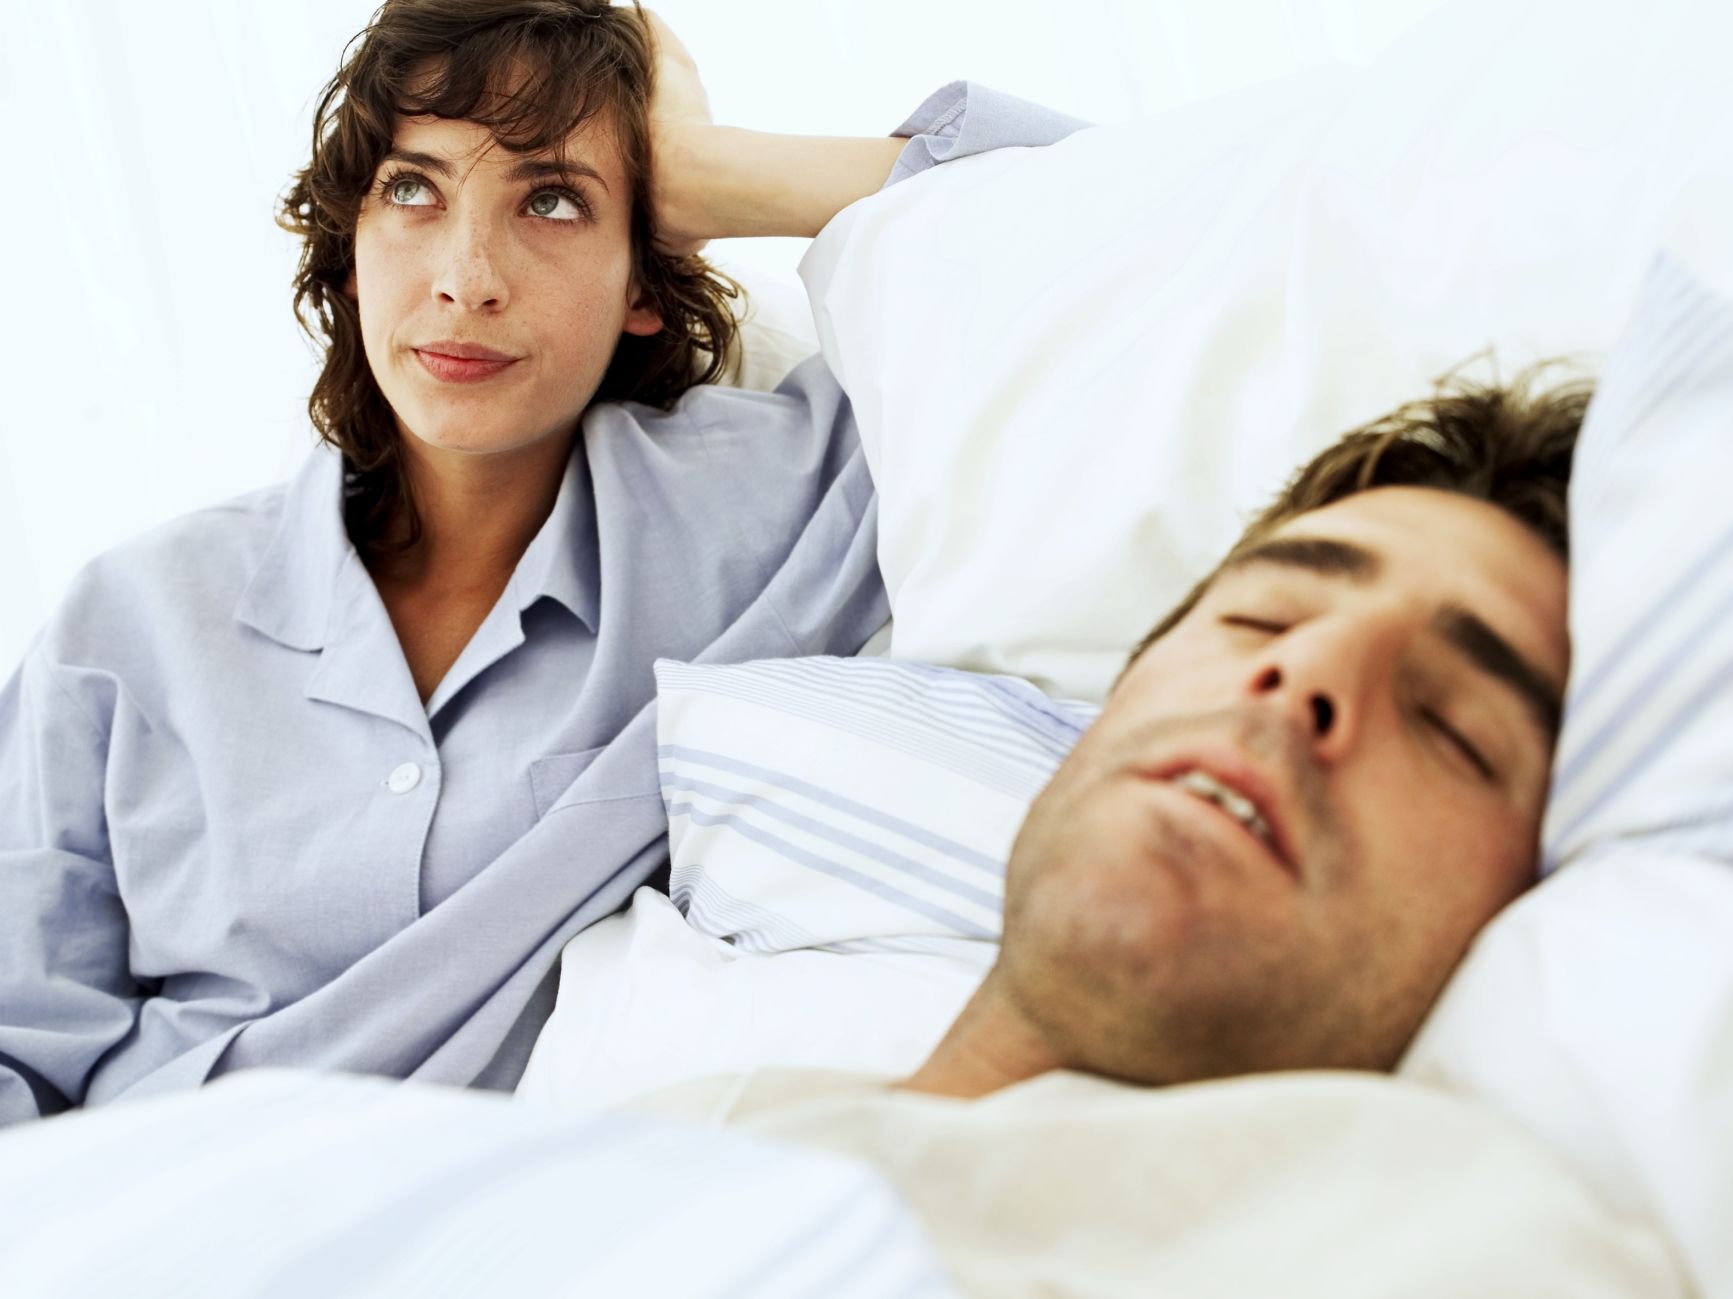 Sleeping Romantic Xxx Videos - Men fall asleep, women cuddle and other post-sex behaviors that affect  relationships | CNN